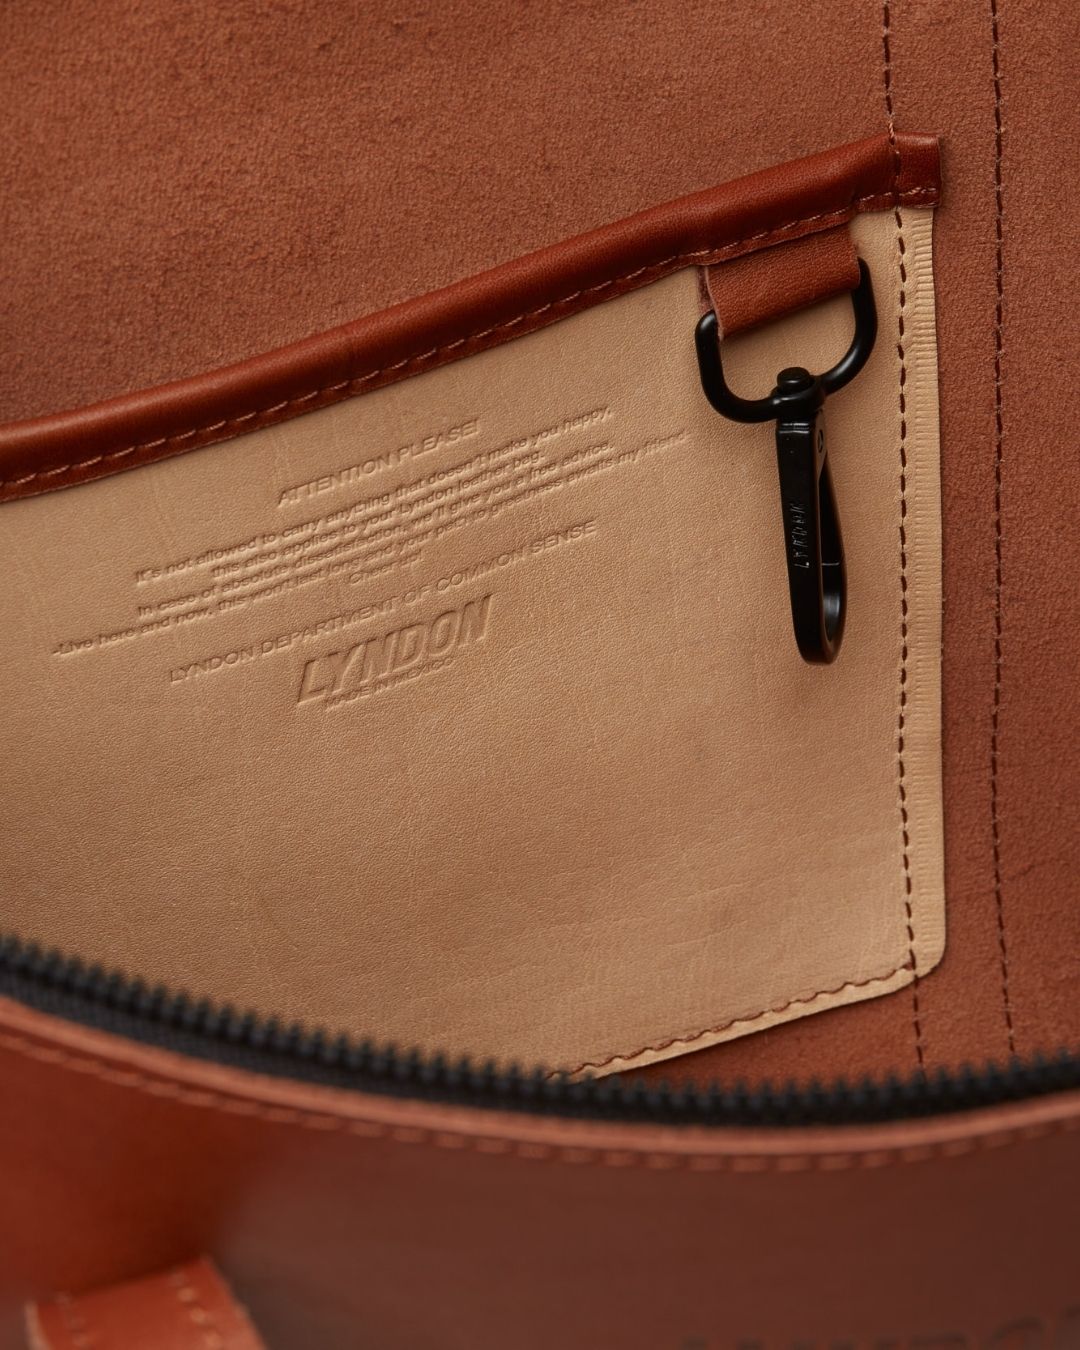 Leather Classic Tote Bag w/ Zipper